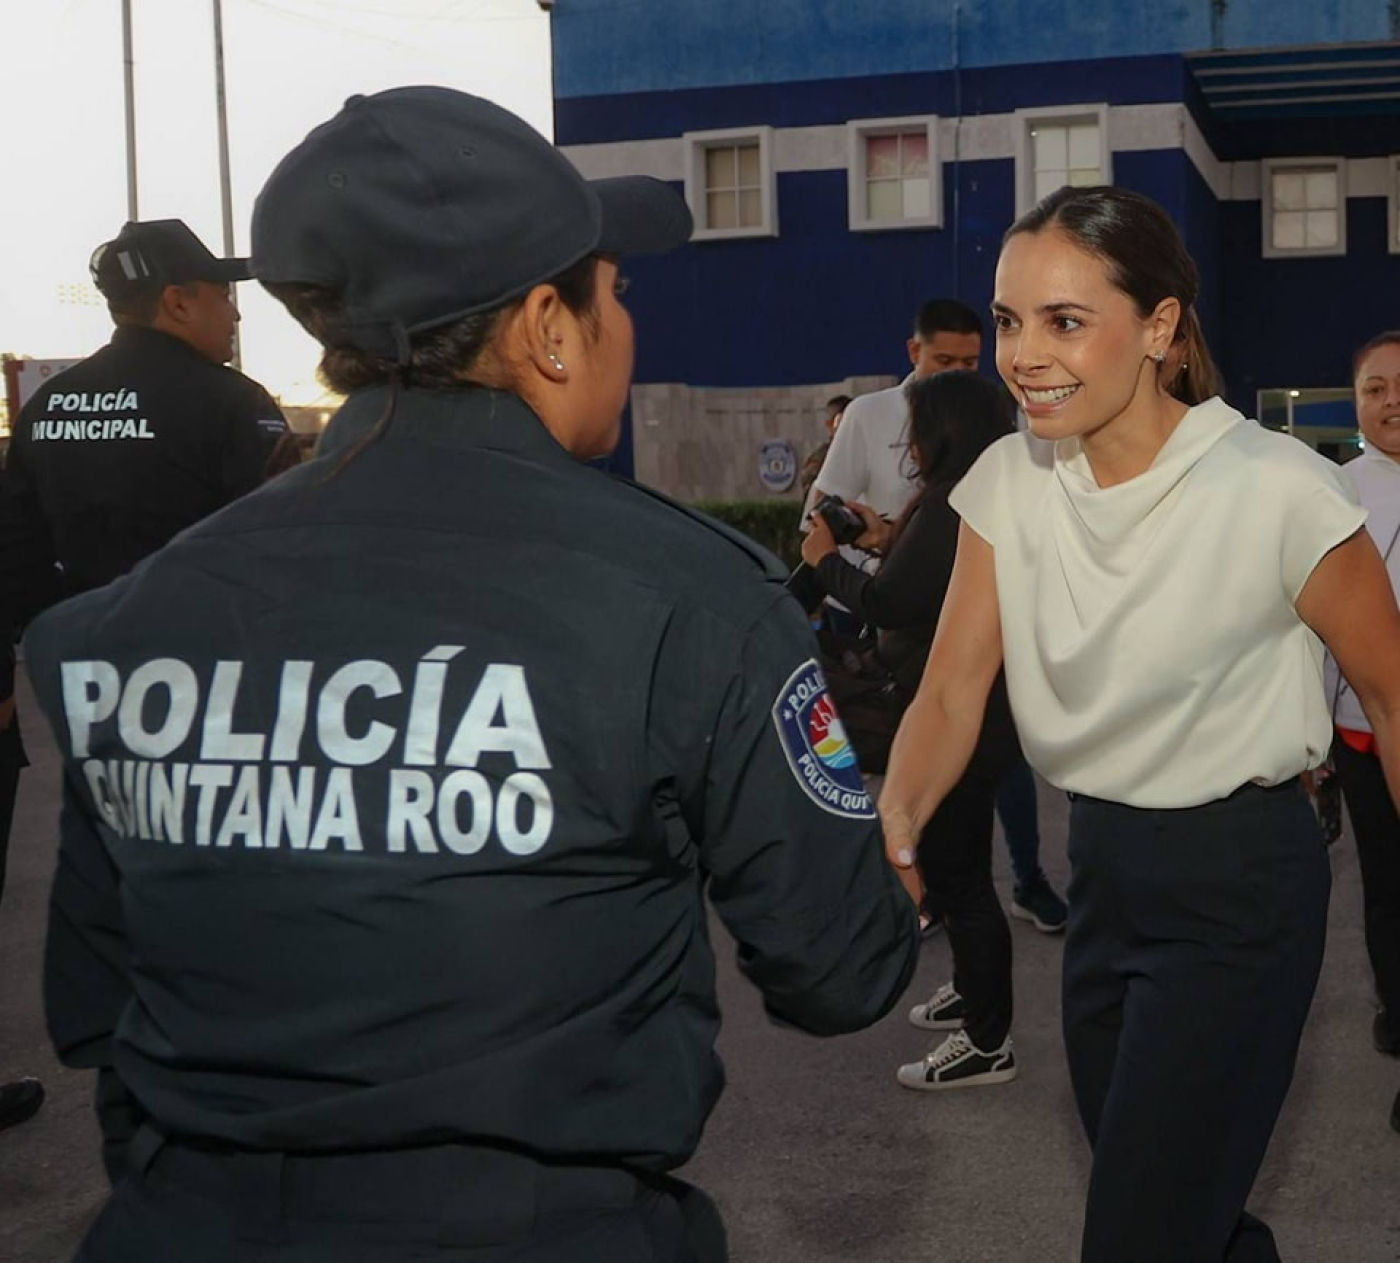 Ana Paty Peralta invita a elementos de seguridad reforzar construcción de la paz